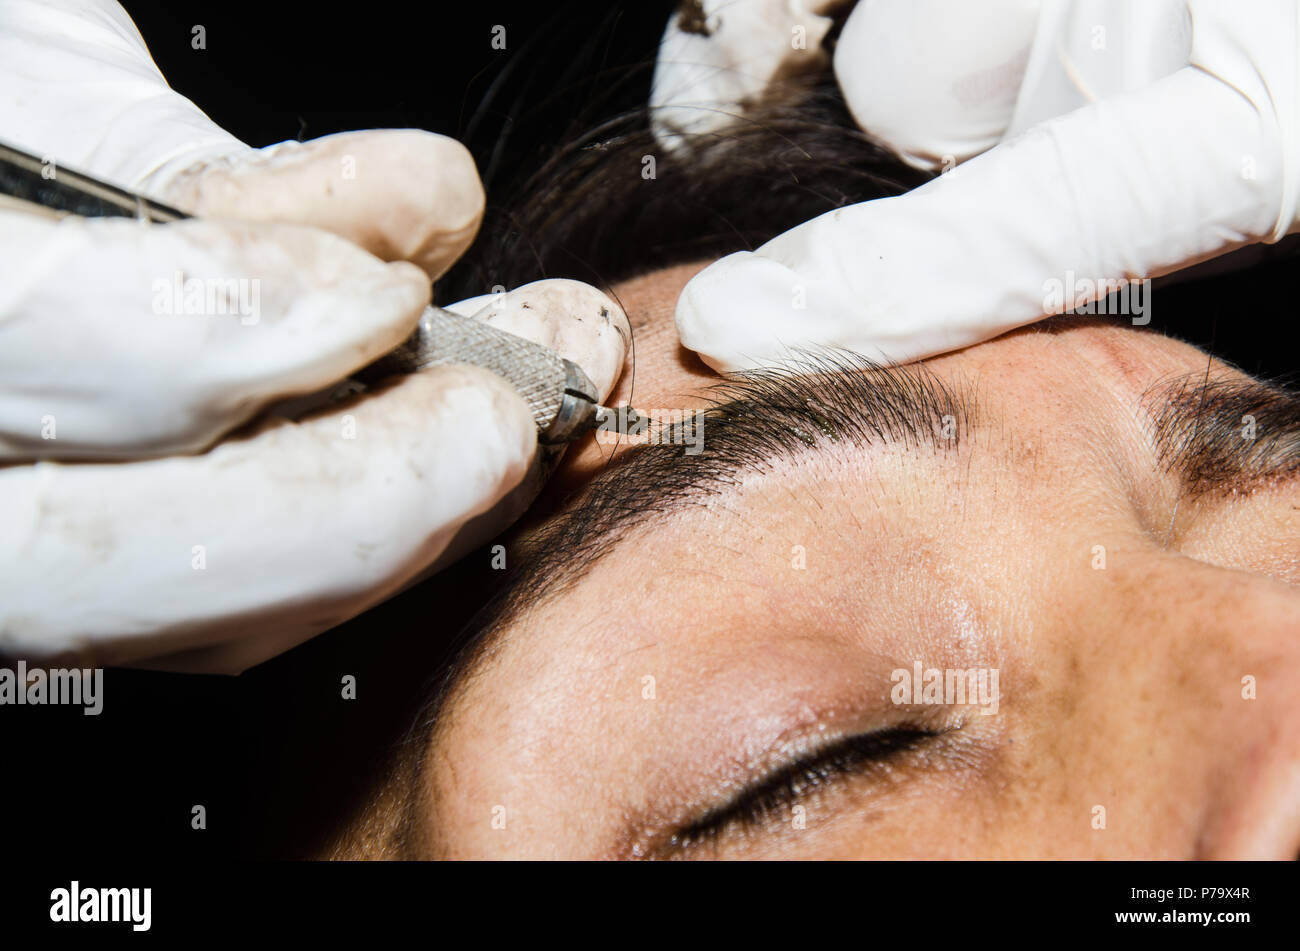 Permanent Make Up Das Tatowieren Von Augenbrauen Kosmetiker Anwendung Dauerhaft Auf Augenbrauen Make Augenbraue Tattoo Stockfotografie Alamy